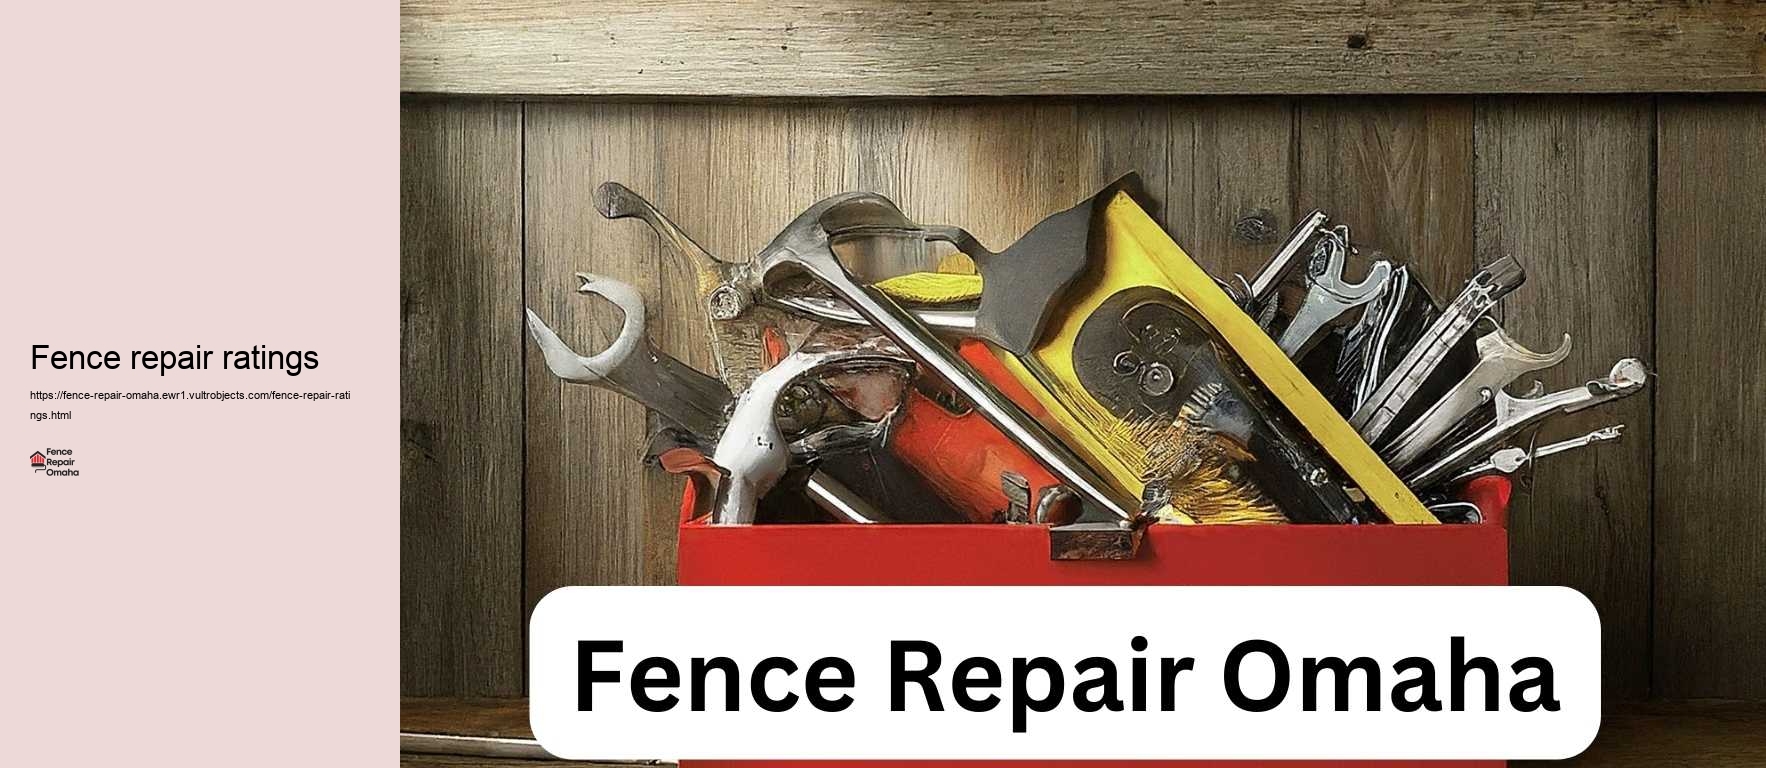 Fence repair ratings